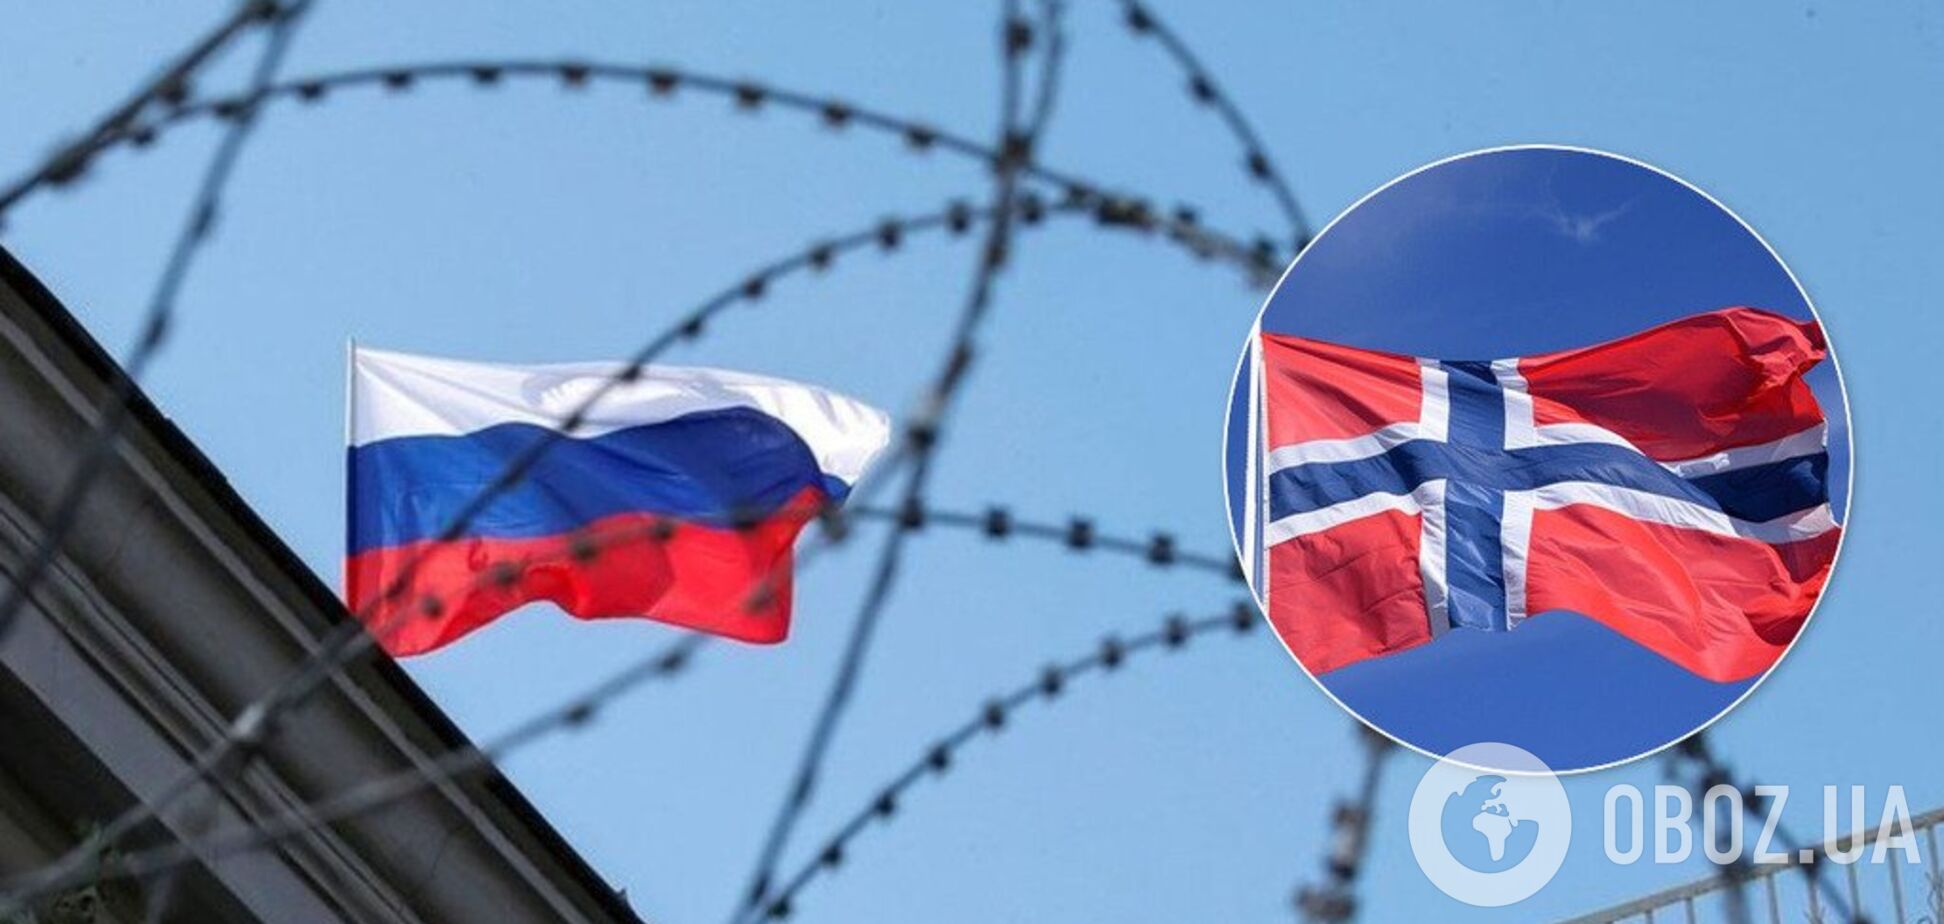 'Хороші сусіди': в ЄС приготували чергову підлість із санкціями проти Росії